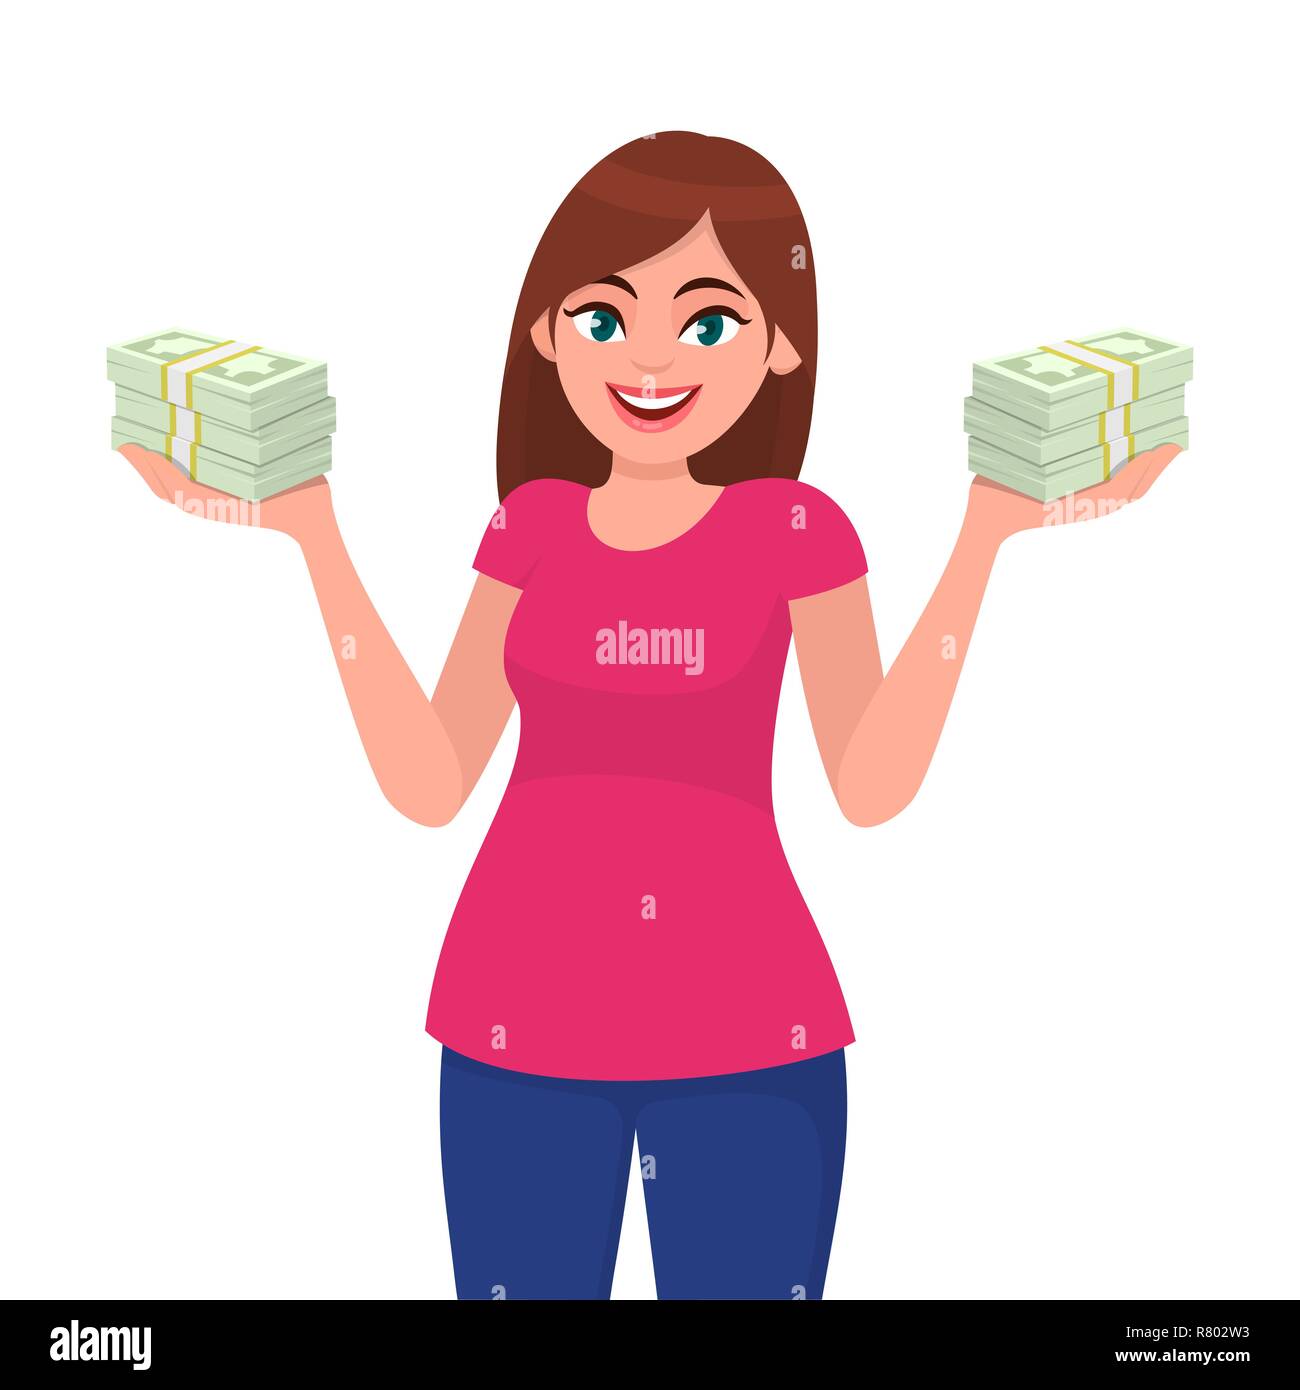 Erfolgreiche junge Geschäftsfrau, die Bargeld / Geld / Währung / Banknotenbündel in Händen hält. Abbildung des Geschäfts- und Finanzkonzepts in Vektor Stock Vektor